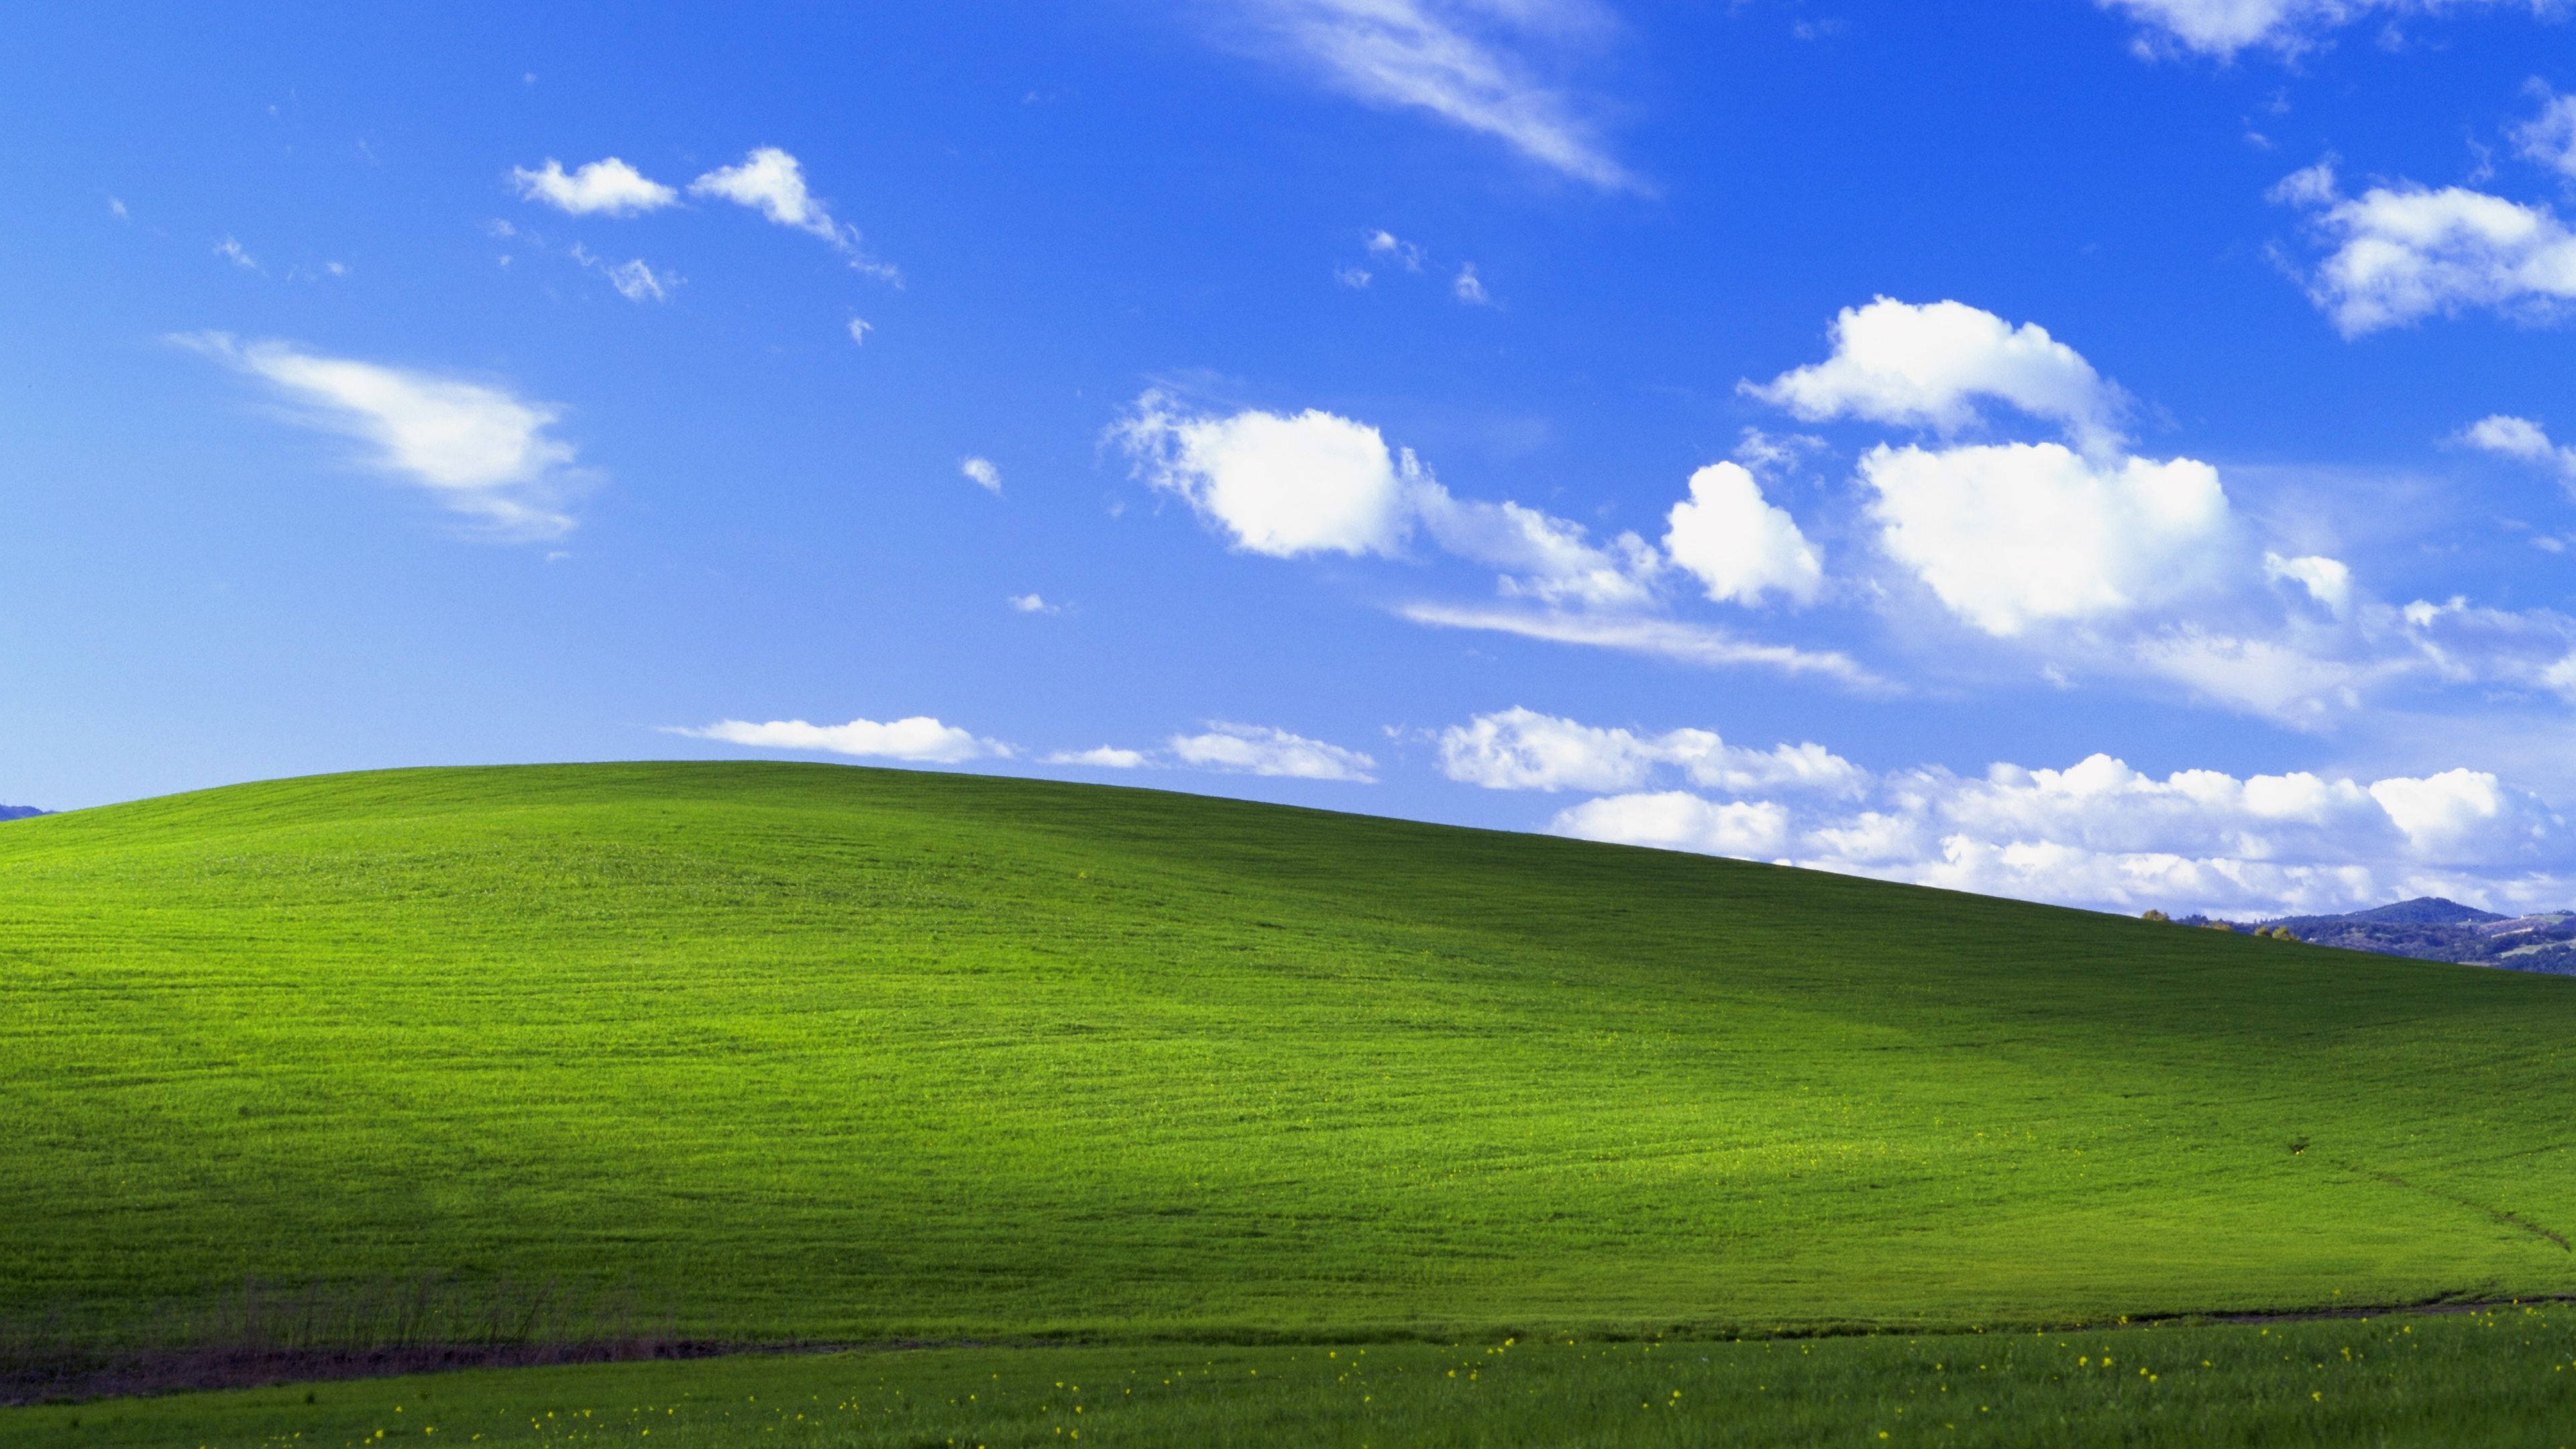 Với hình nền Windows XP, bạn sẽ có một không gian làm việc mới mẻ và đầy màu sắc. Tải ngay hình nền này để thay đổi không gian làm việc của bạn. Với hình ảnh đẹp và sắc nét, bạn sẽ thực sự đắm chìm trong thế giới của Windows XP.